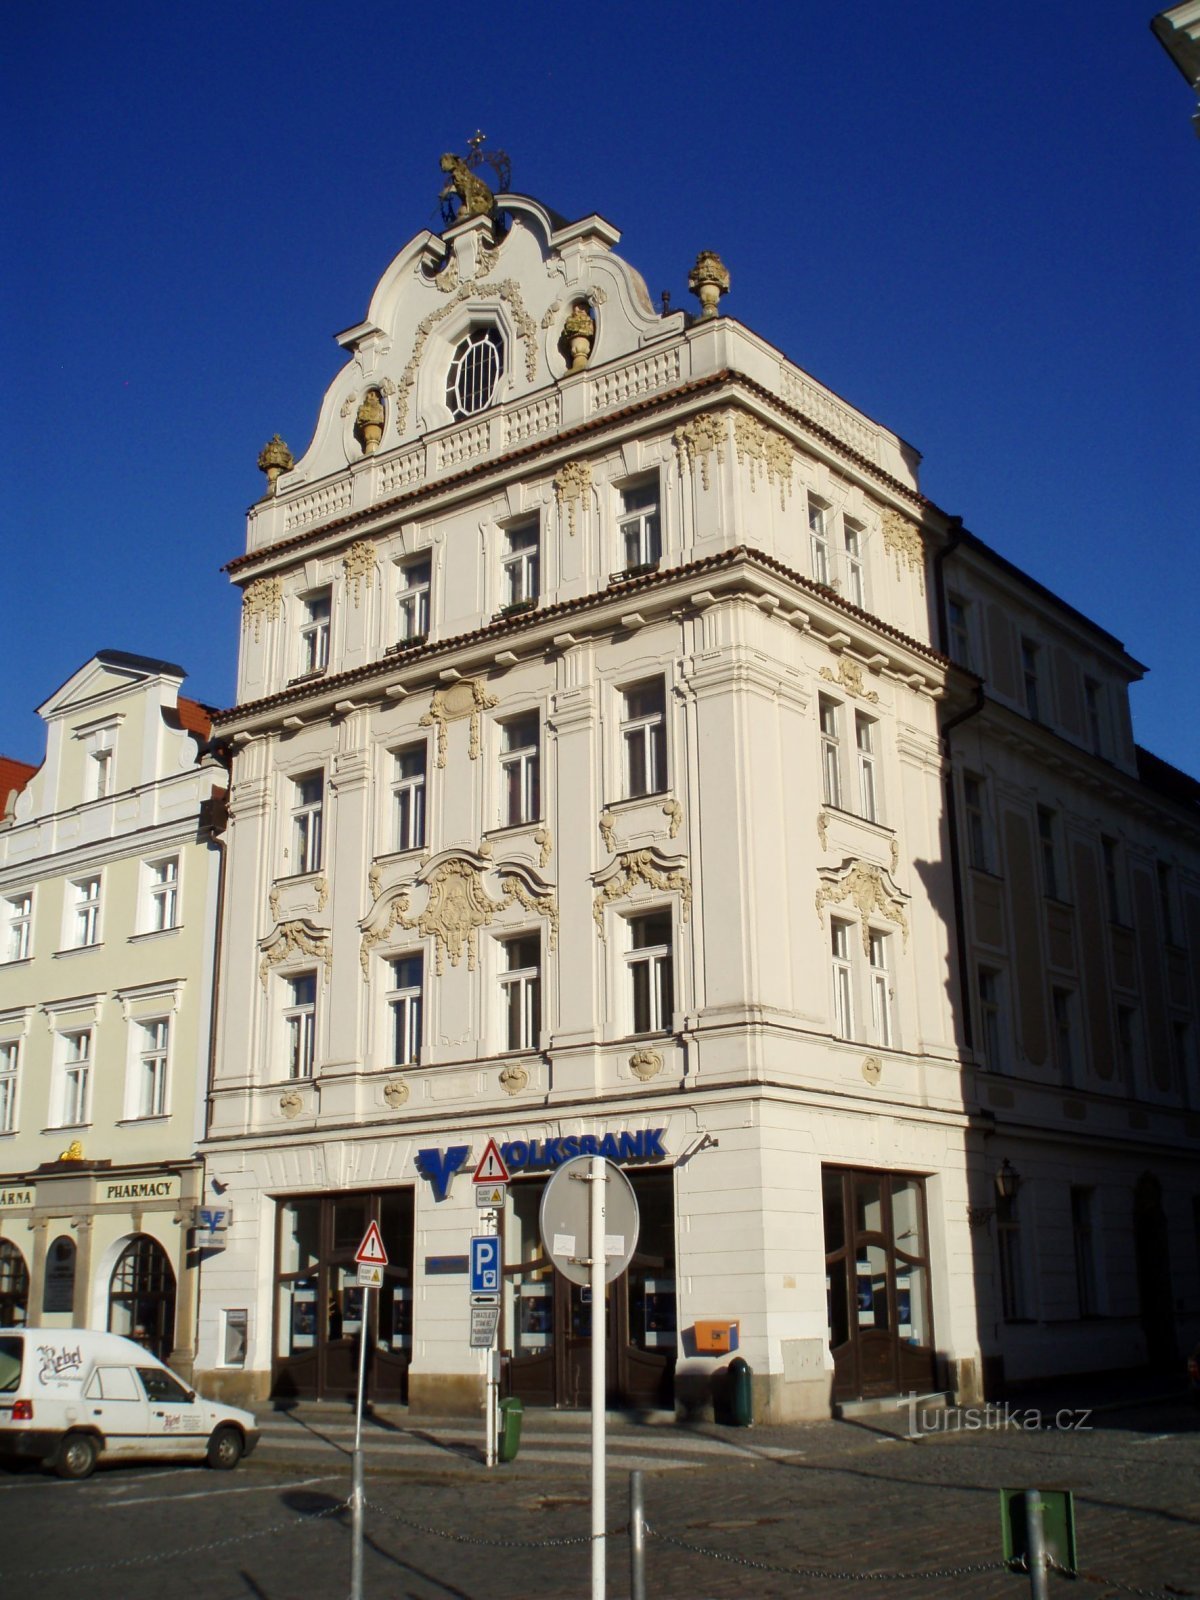 Velké náměstí No. 30 (Hradec Králové, 25.4.2012. lokakuuta XNUMX)